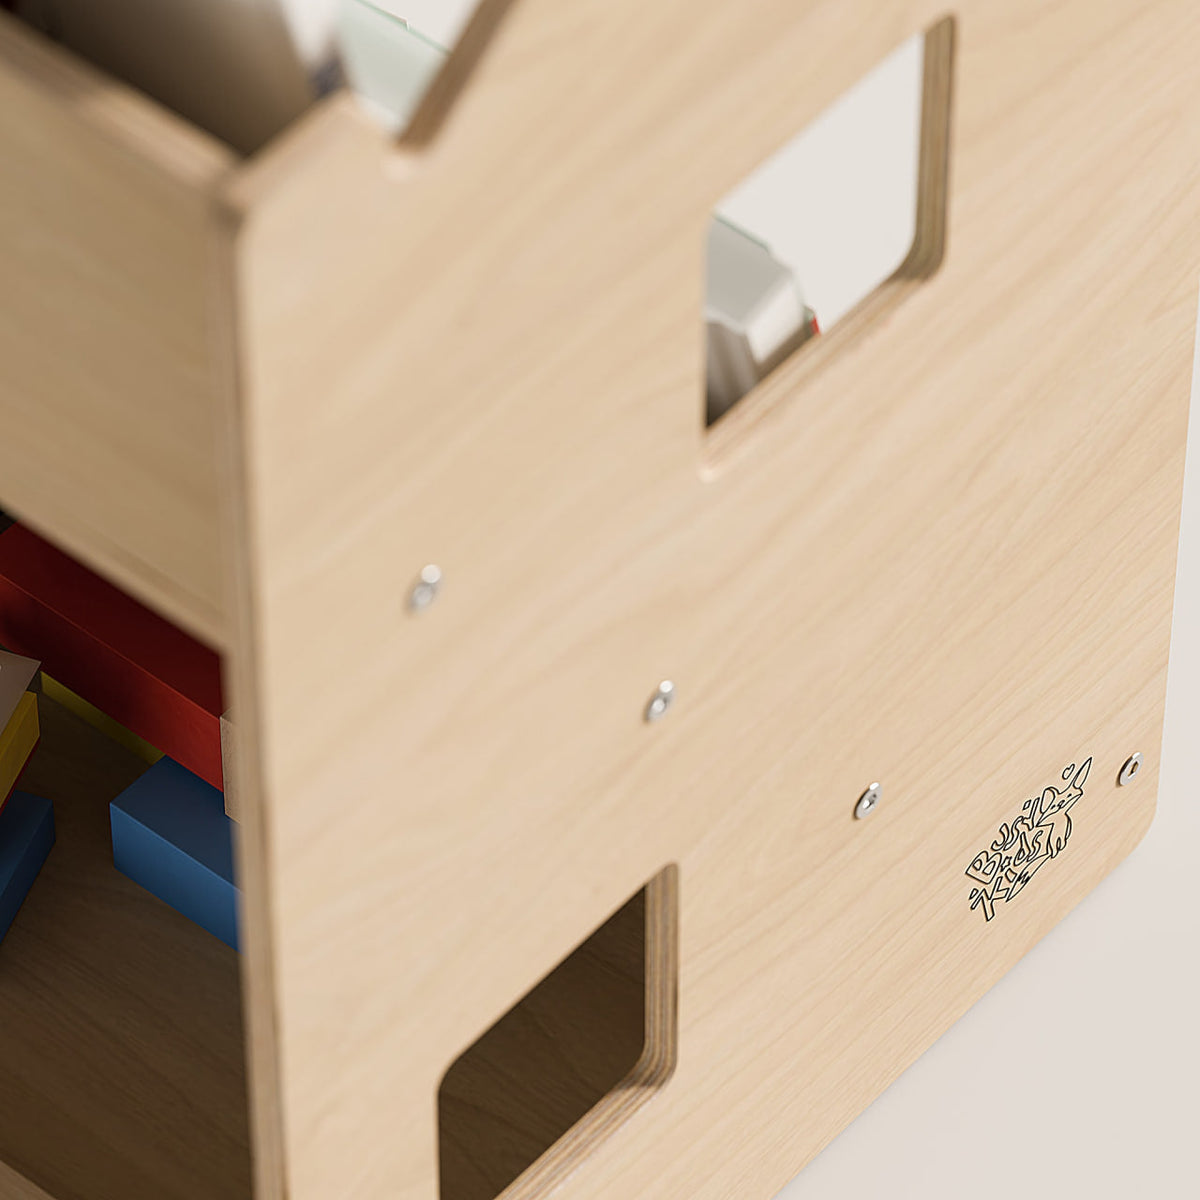 Bücherregal &amp; Spielzeugregal - Montessori® by Busy Kids